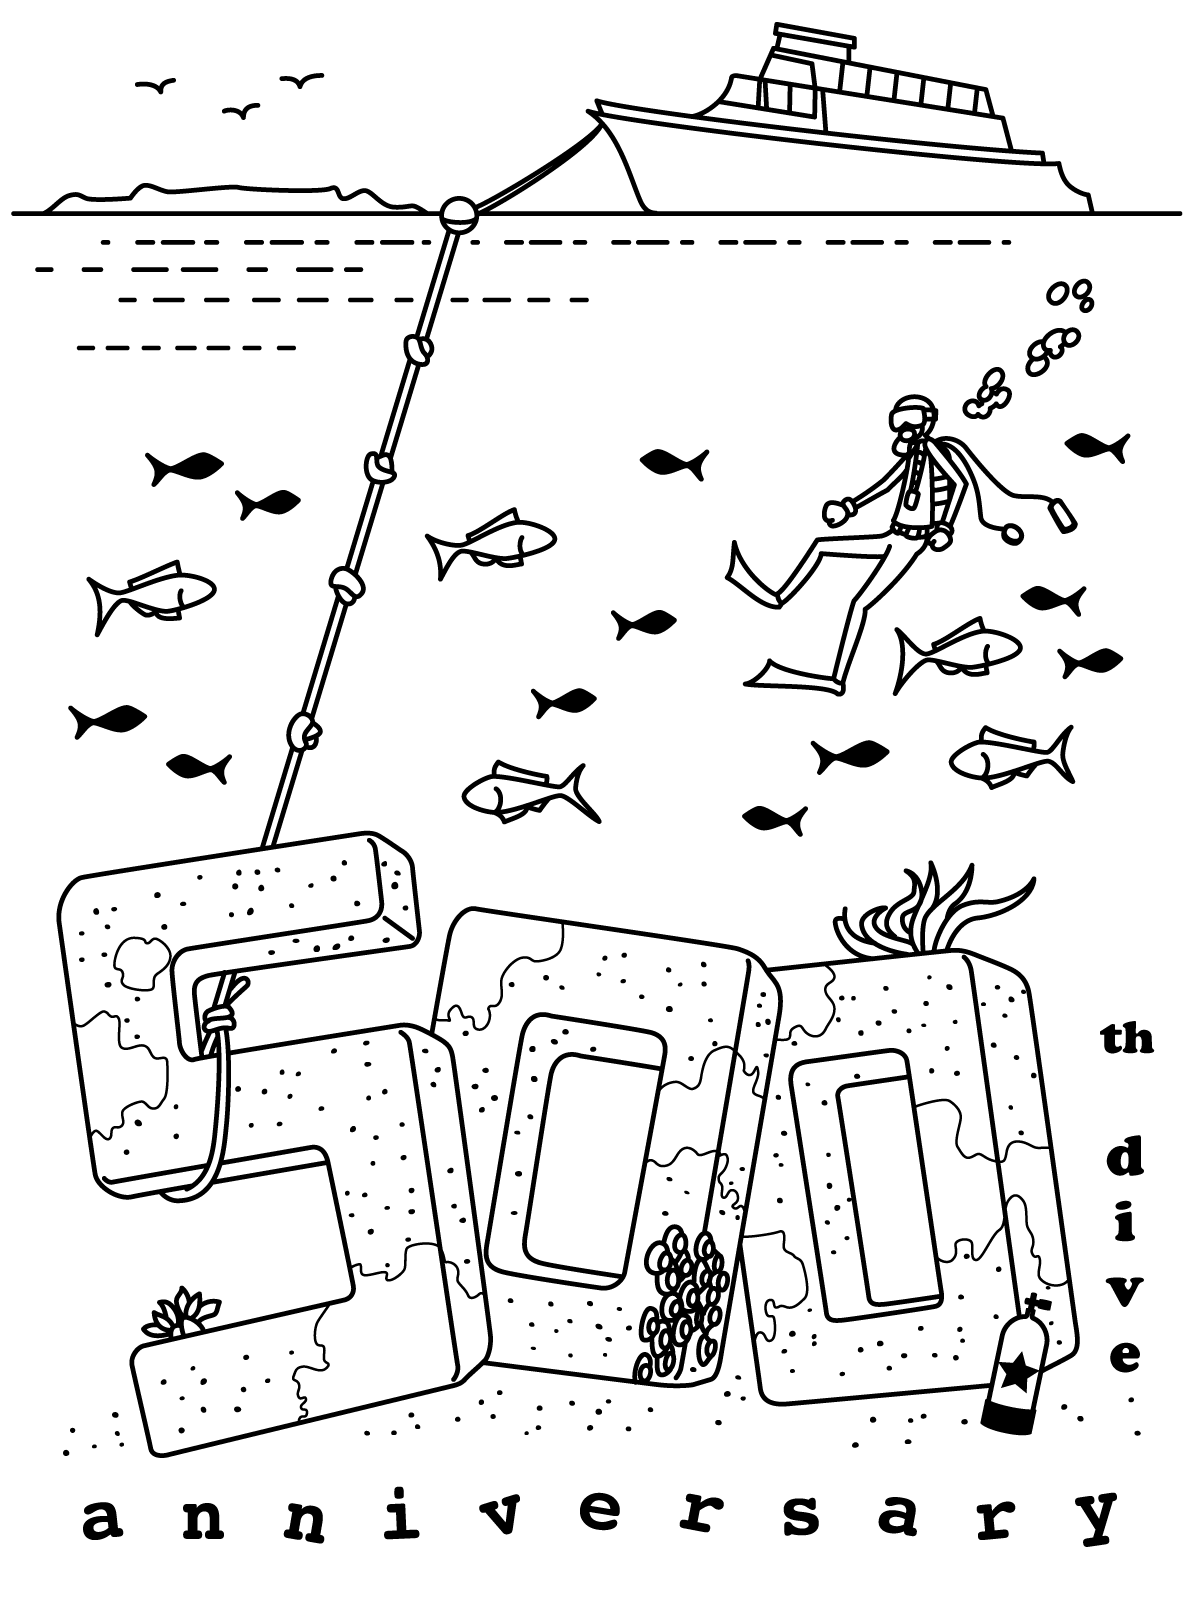 500th dive anniversary 通常版